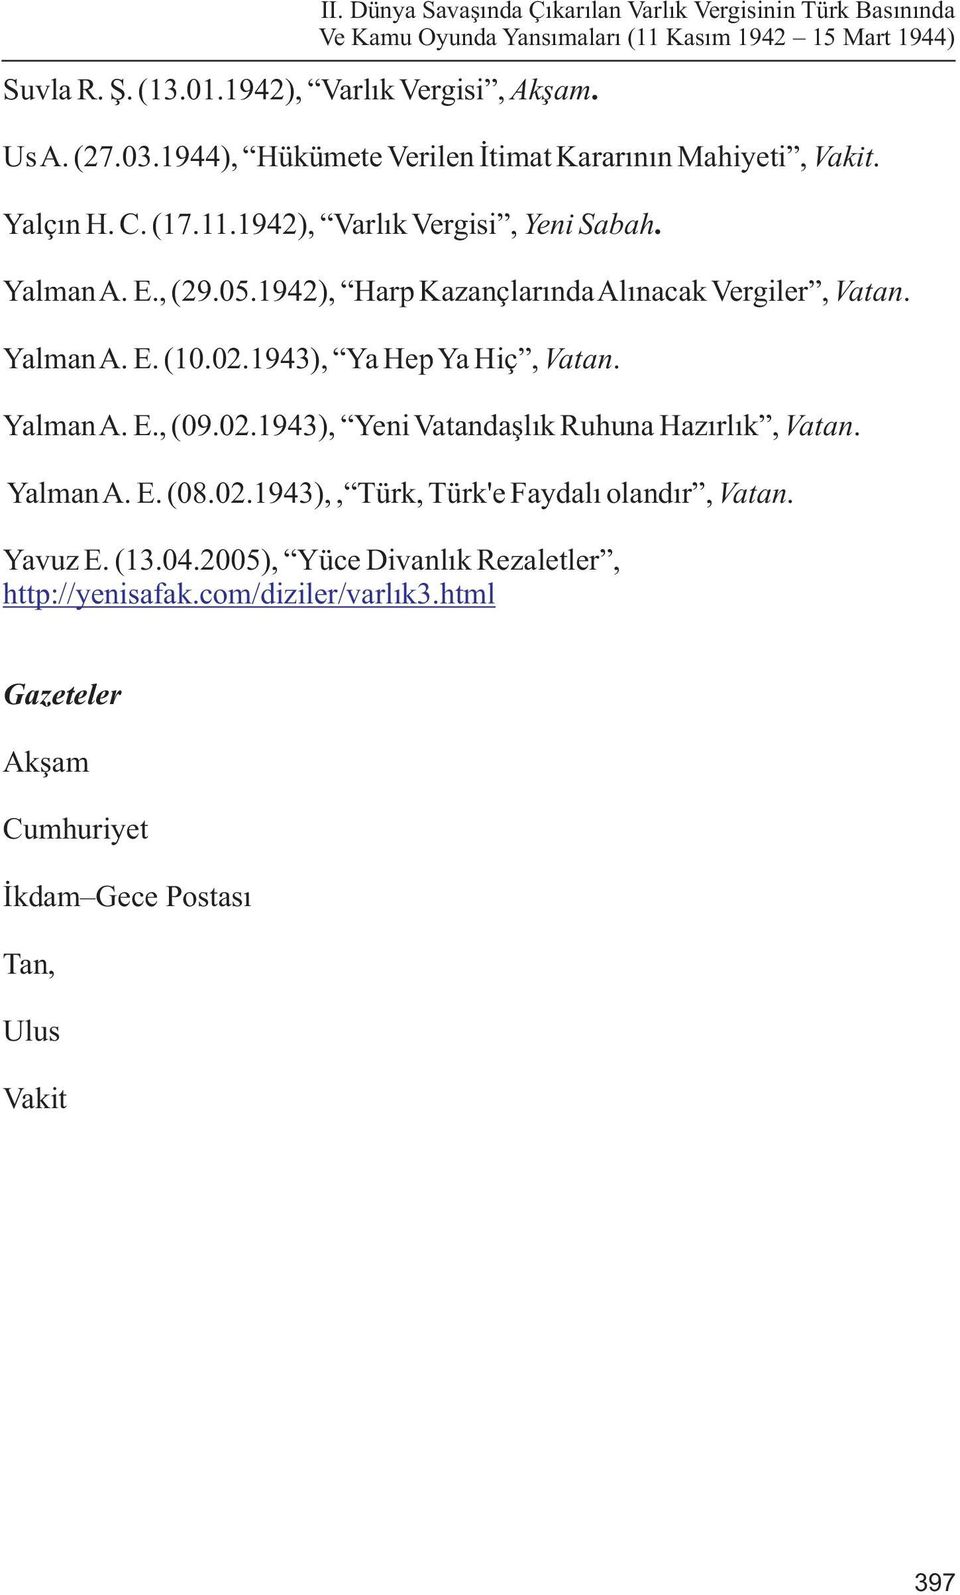 Yalman A. E. (08.02.1943),, Türk, Türk'e Faydalý olandýr, Vatan. Yavuz E. (13.04.2005), Yüce Divanlýk Rezaletler, http://yenisafak.com/diziler/varlýk3.html II.